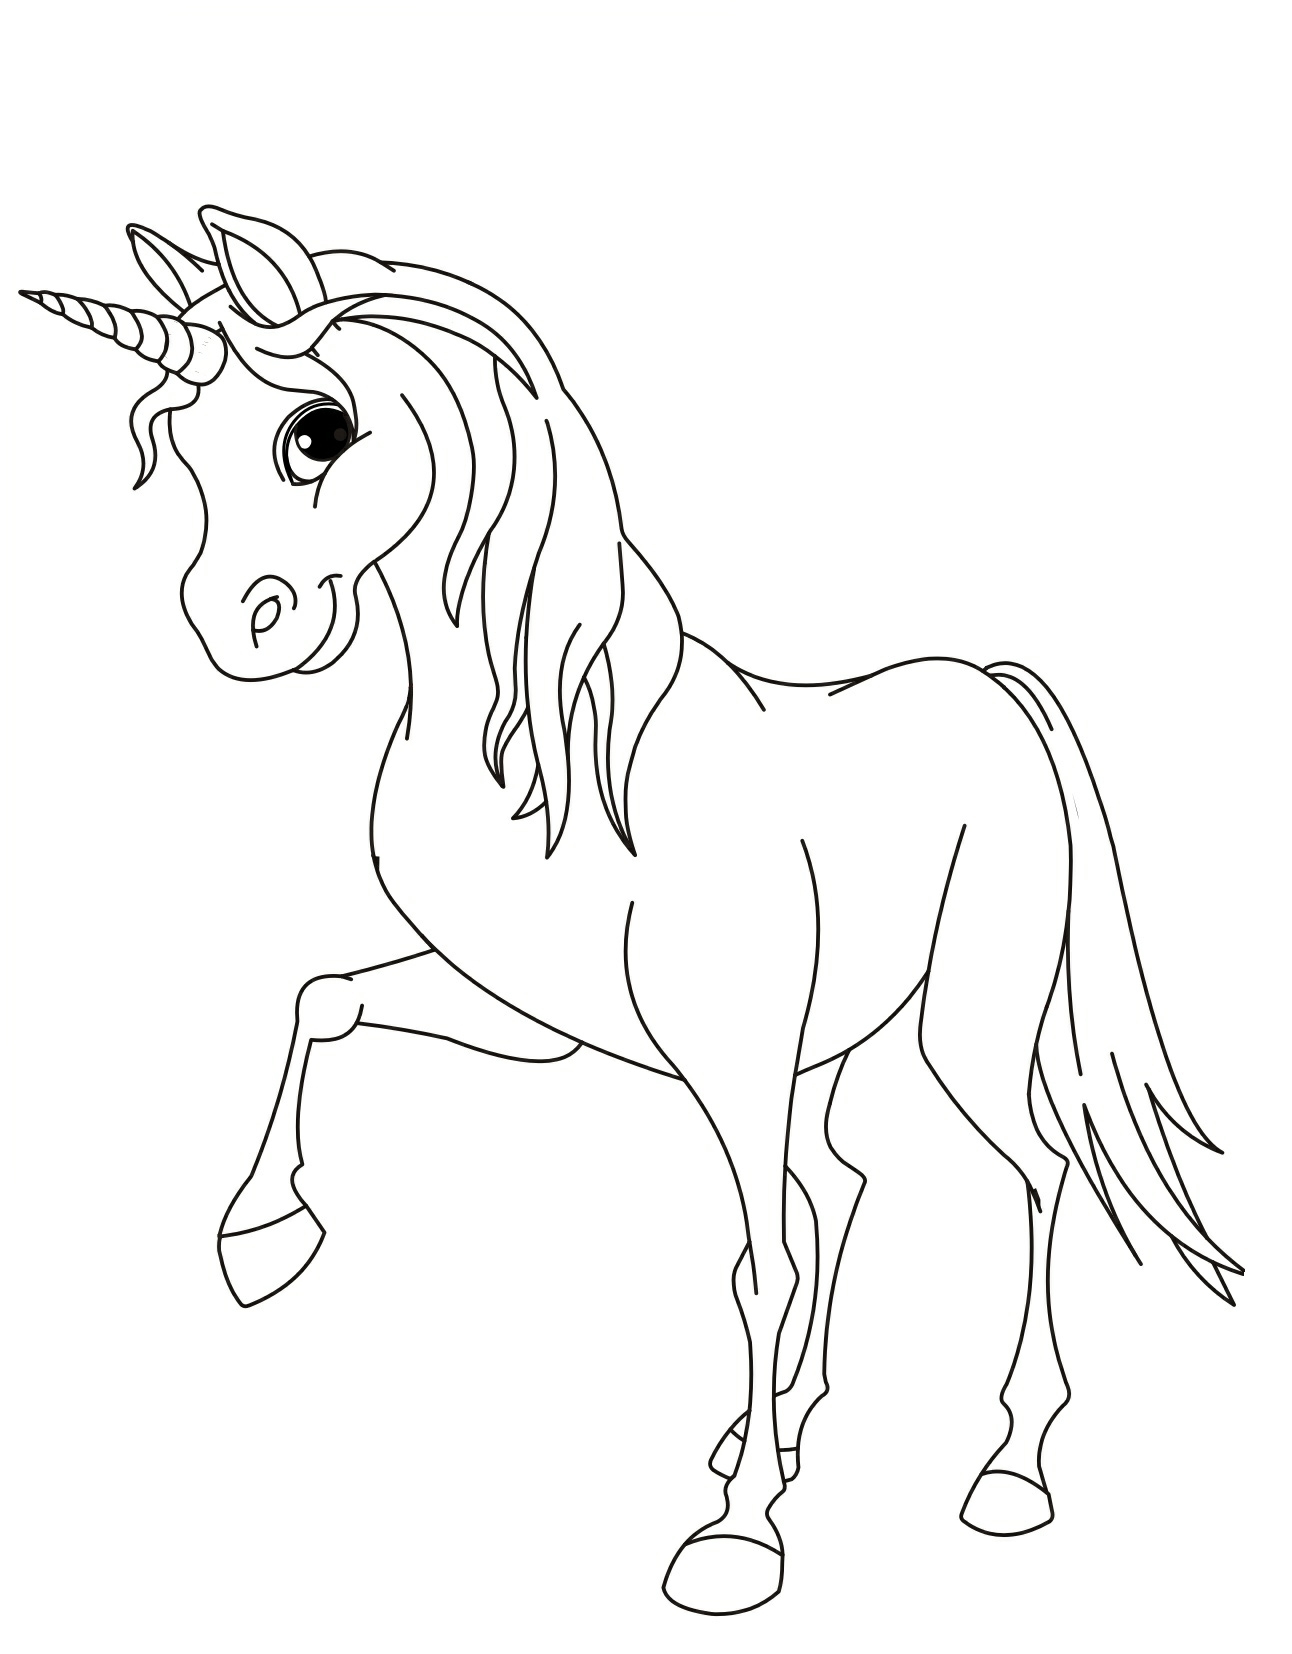 Раскраски для детей лошади пони мультфильм стиль толстые линии